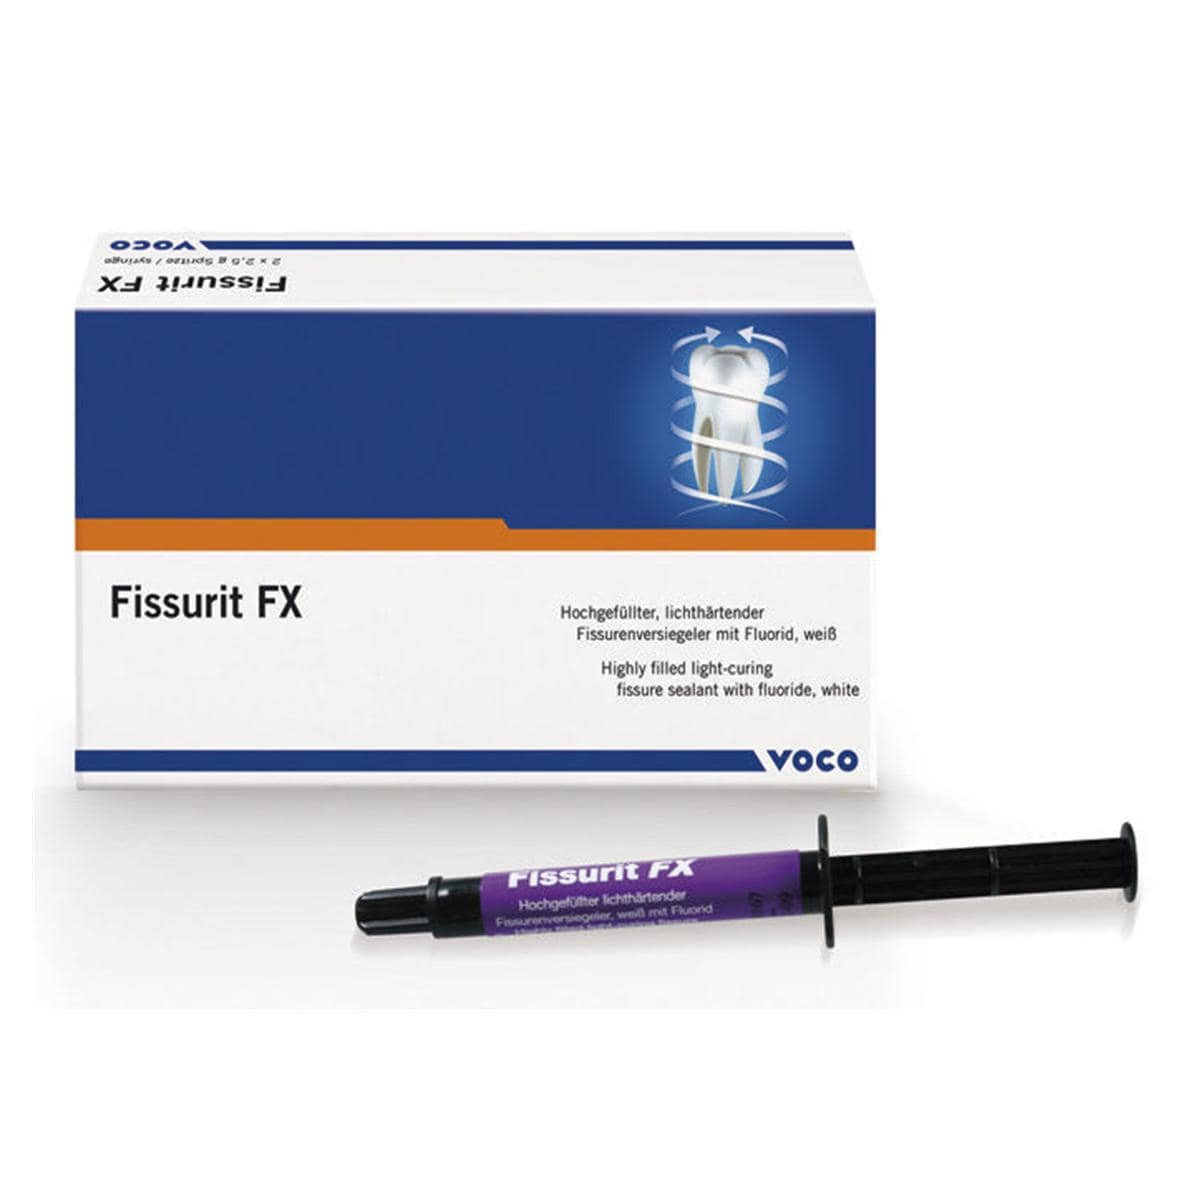 Fissurit FX - Blanc, 2x 2,5 g et embouts d'application type 40